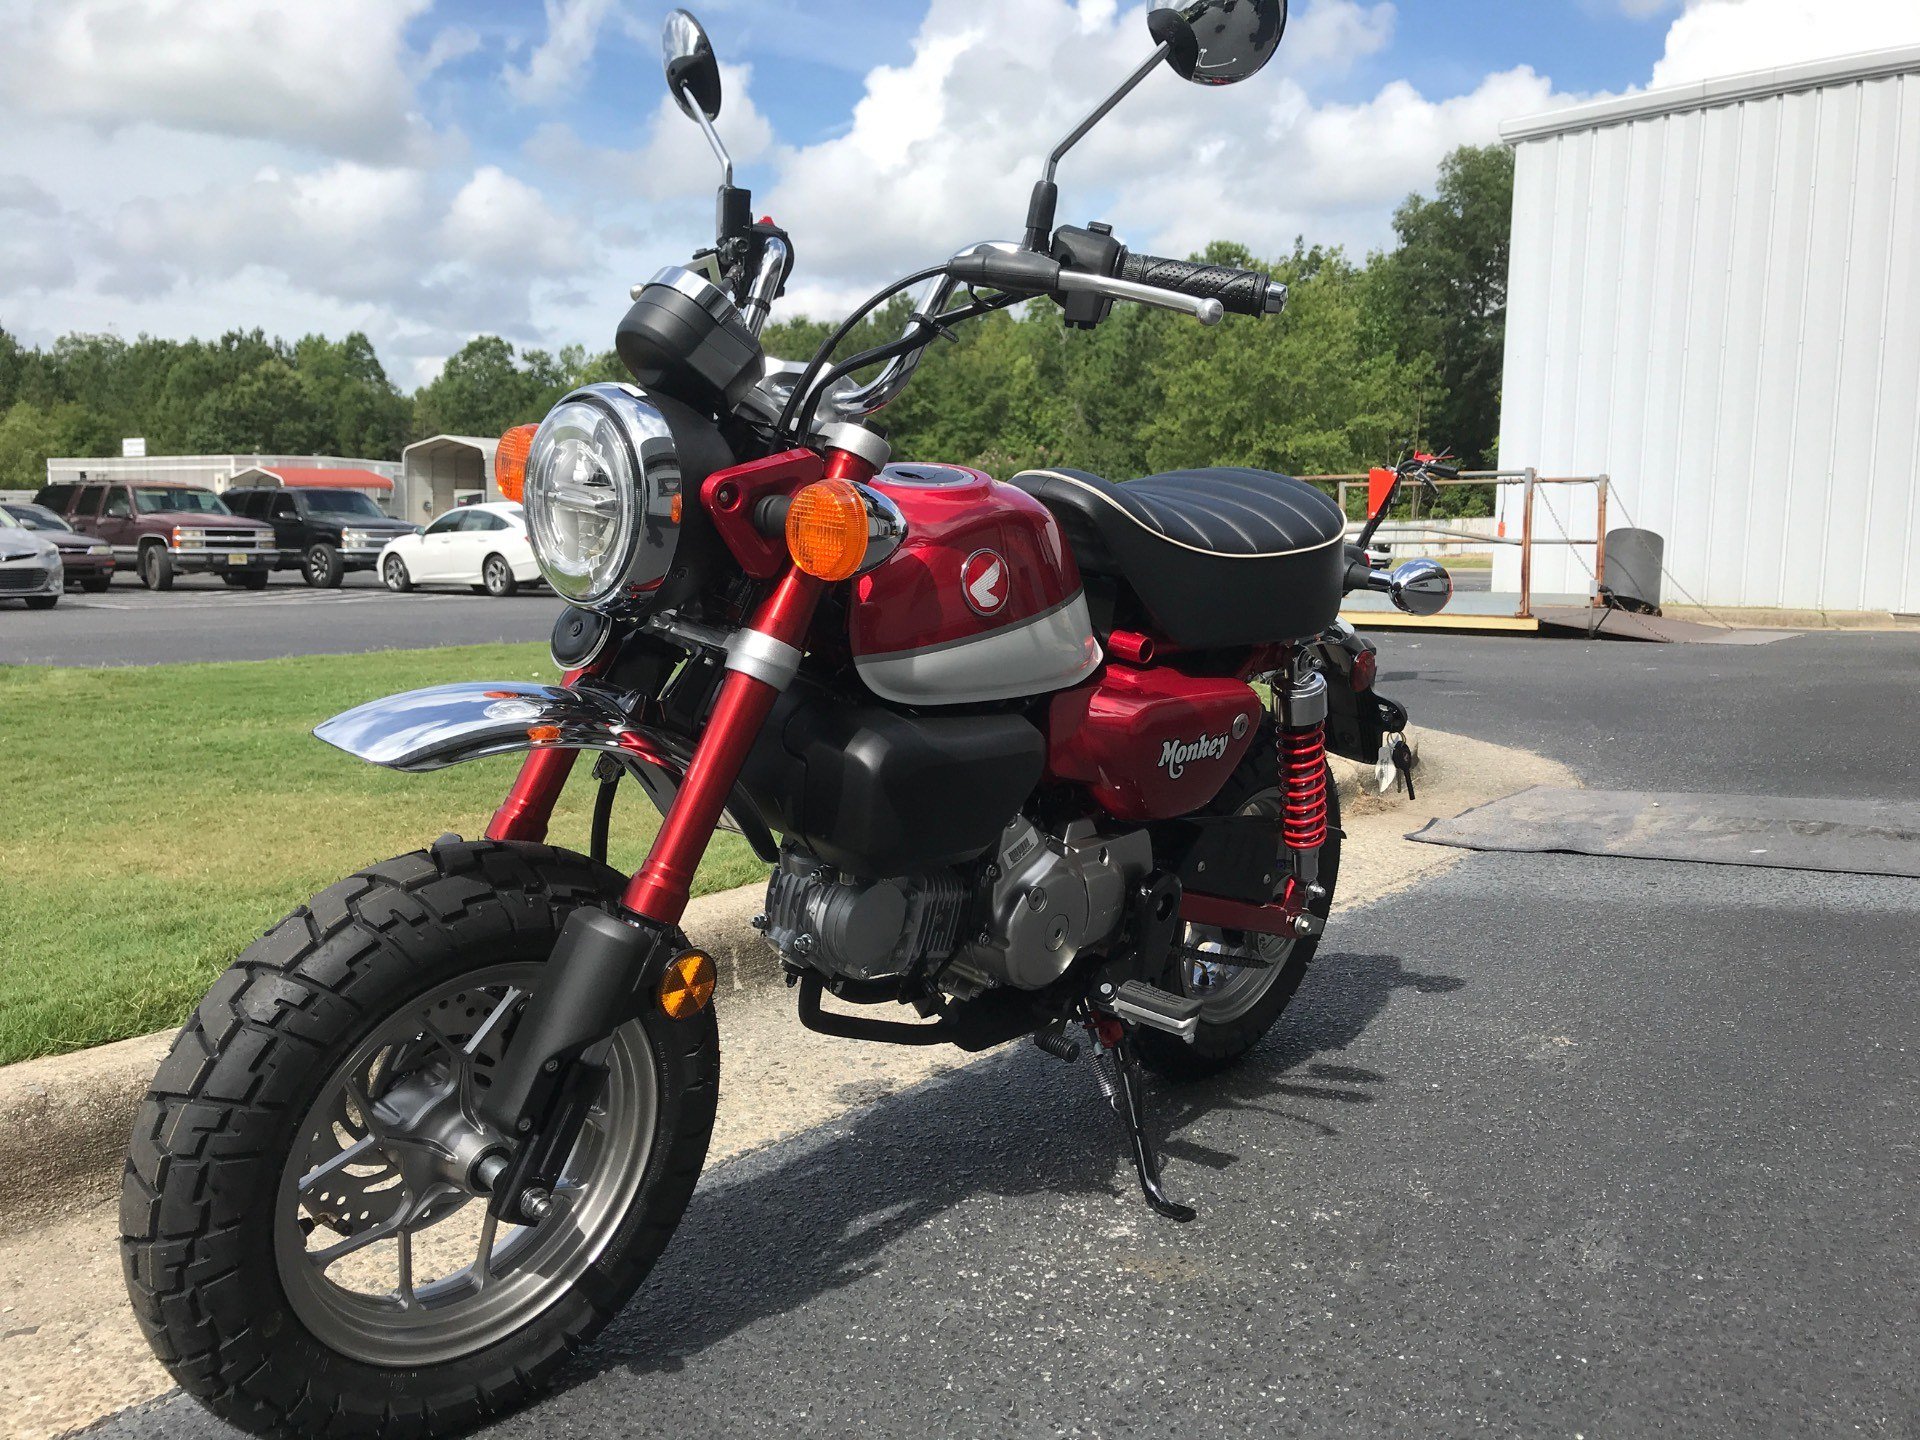 2021 Honda Monkey in Greenville, North Carolina - Photo 4